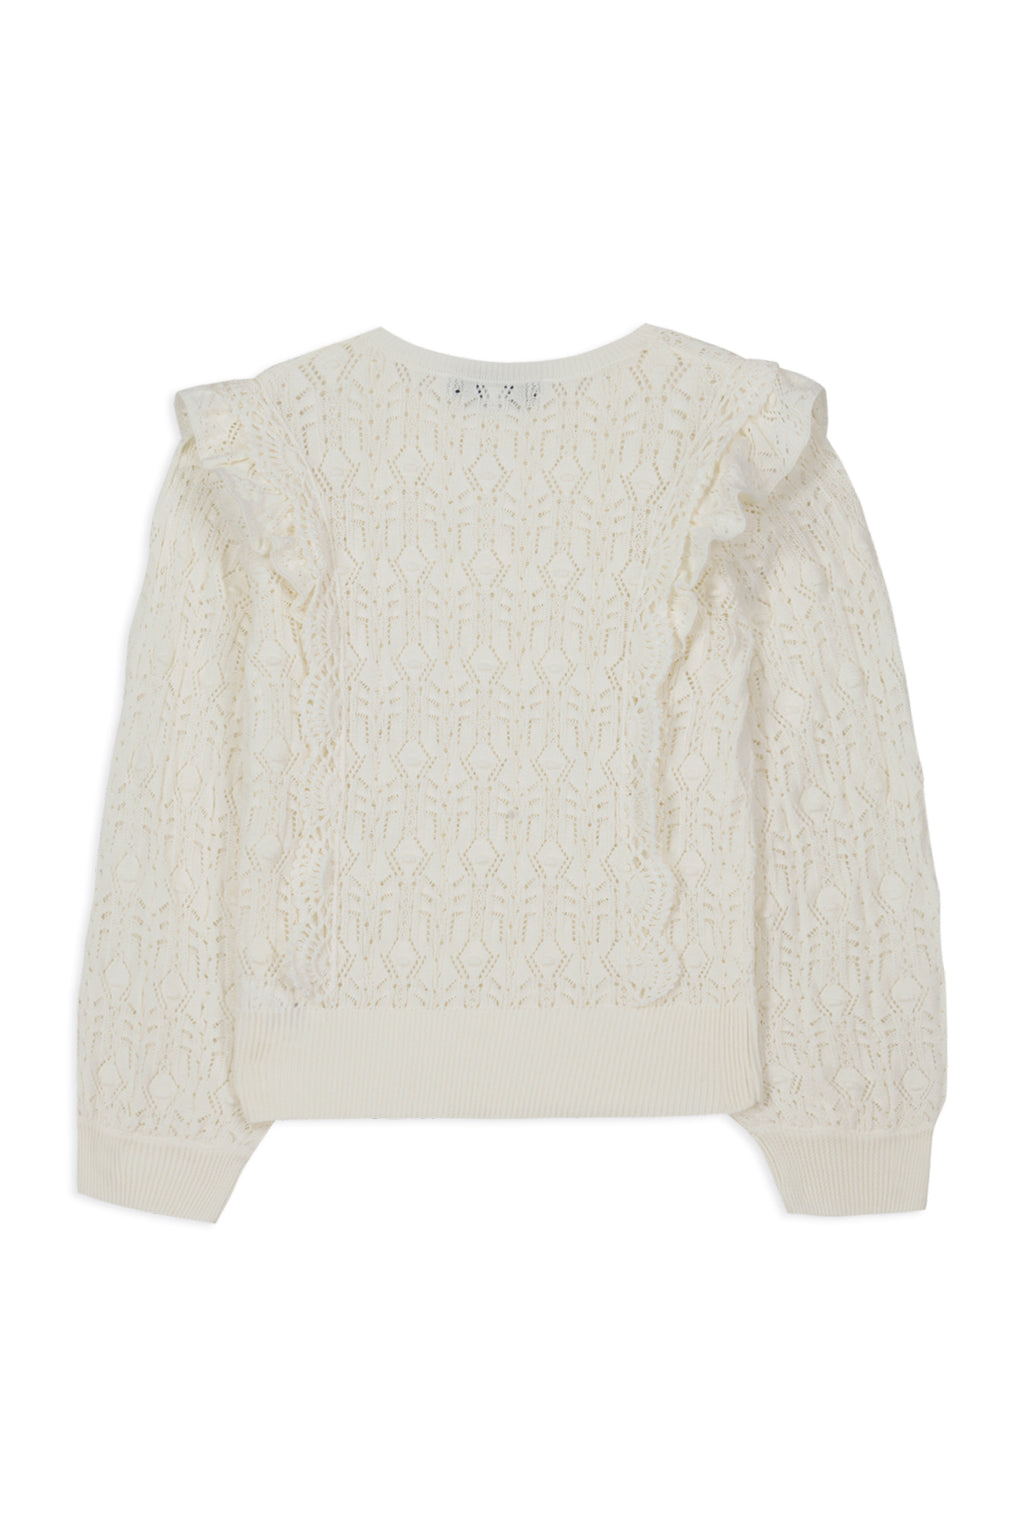 Sweater - White Ruffles